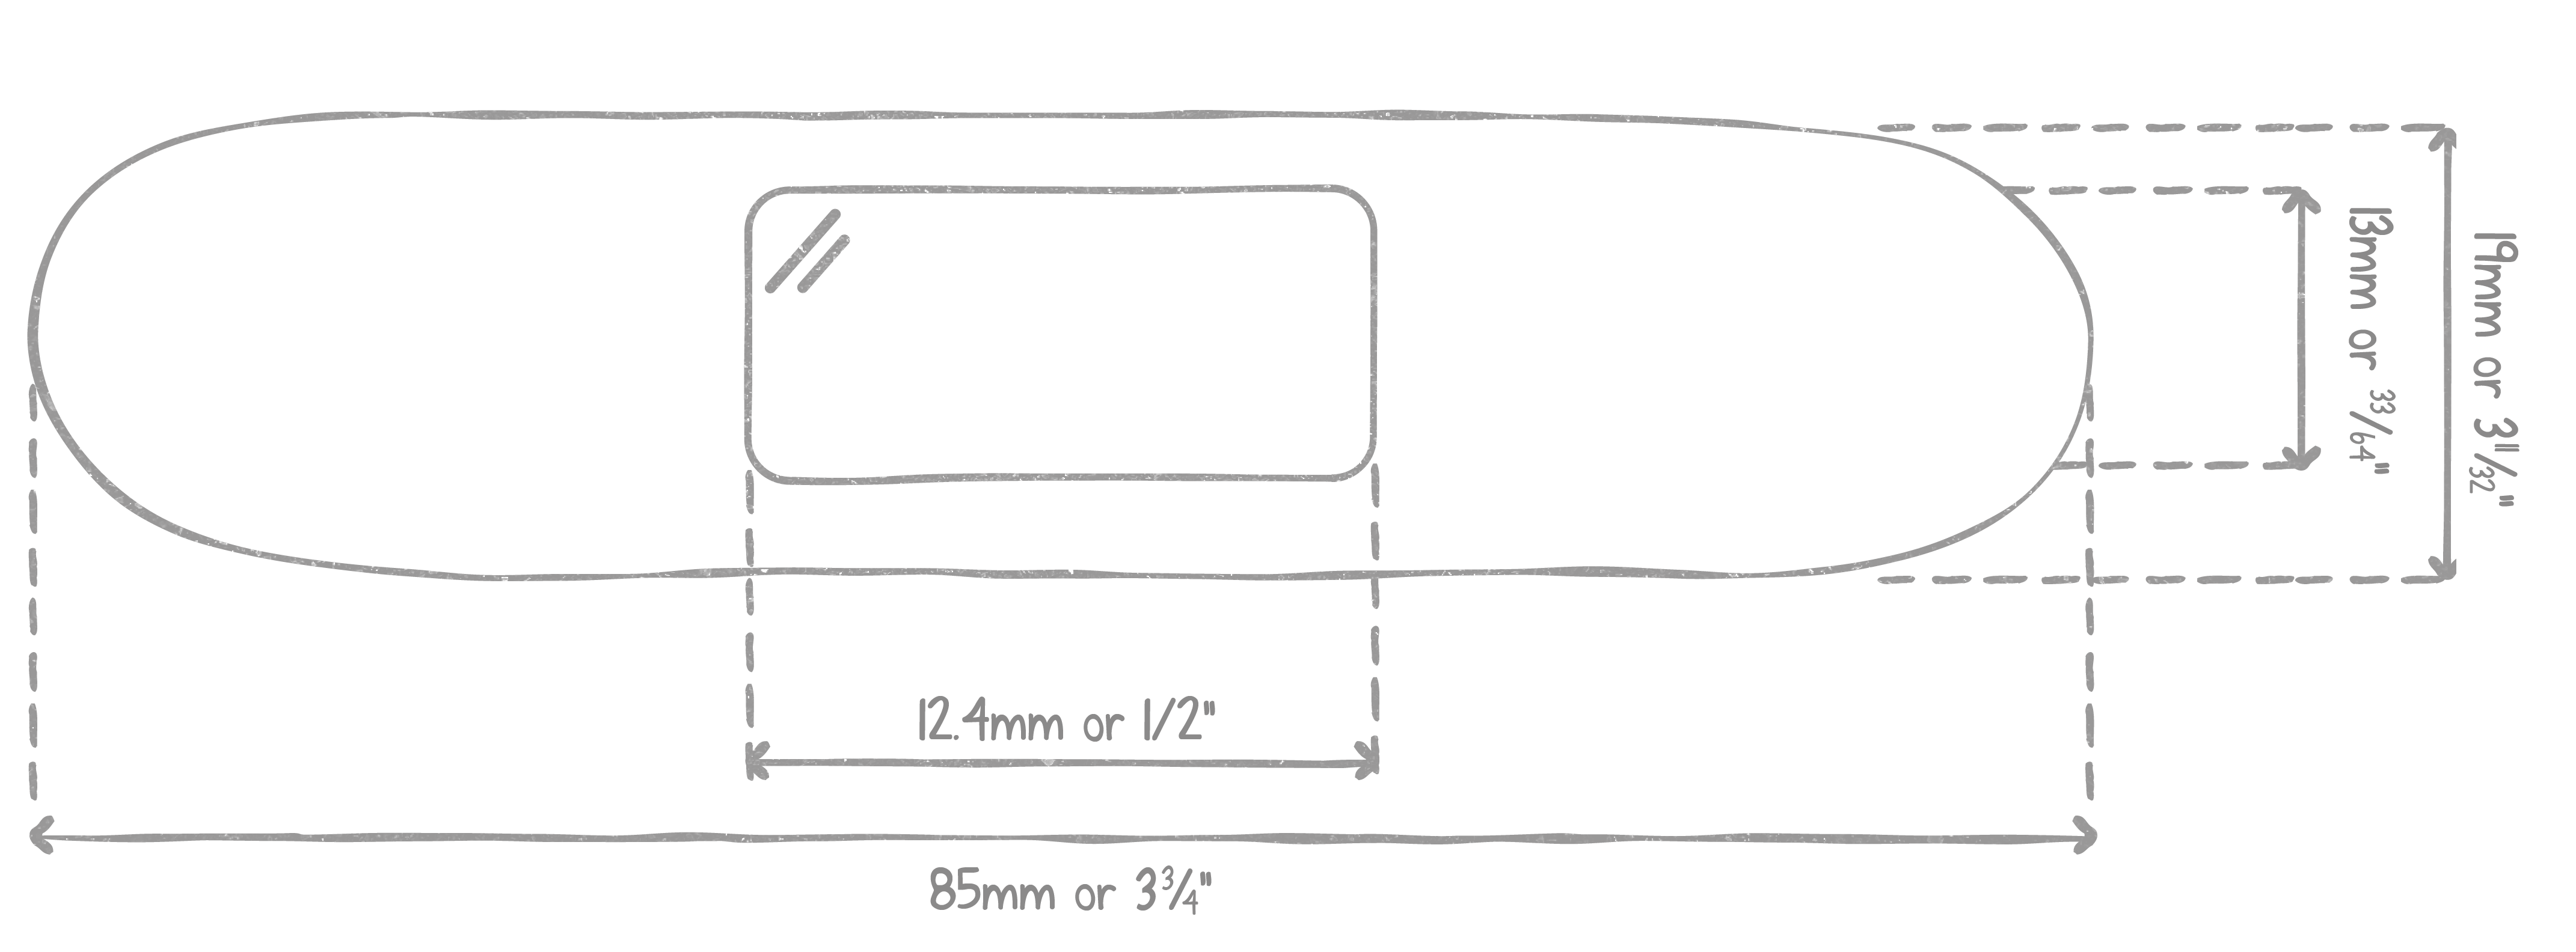 strip-diagram-01.png